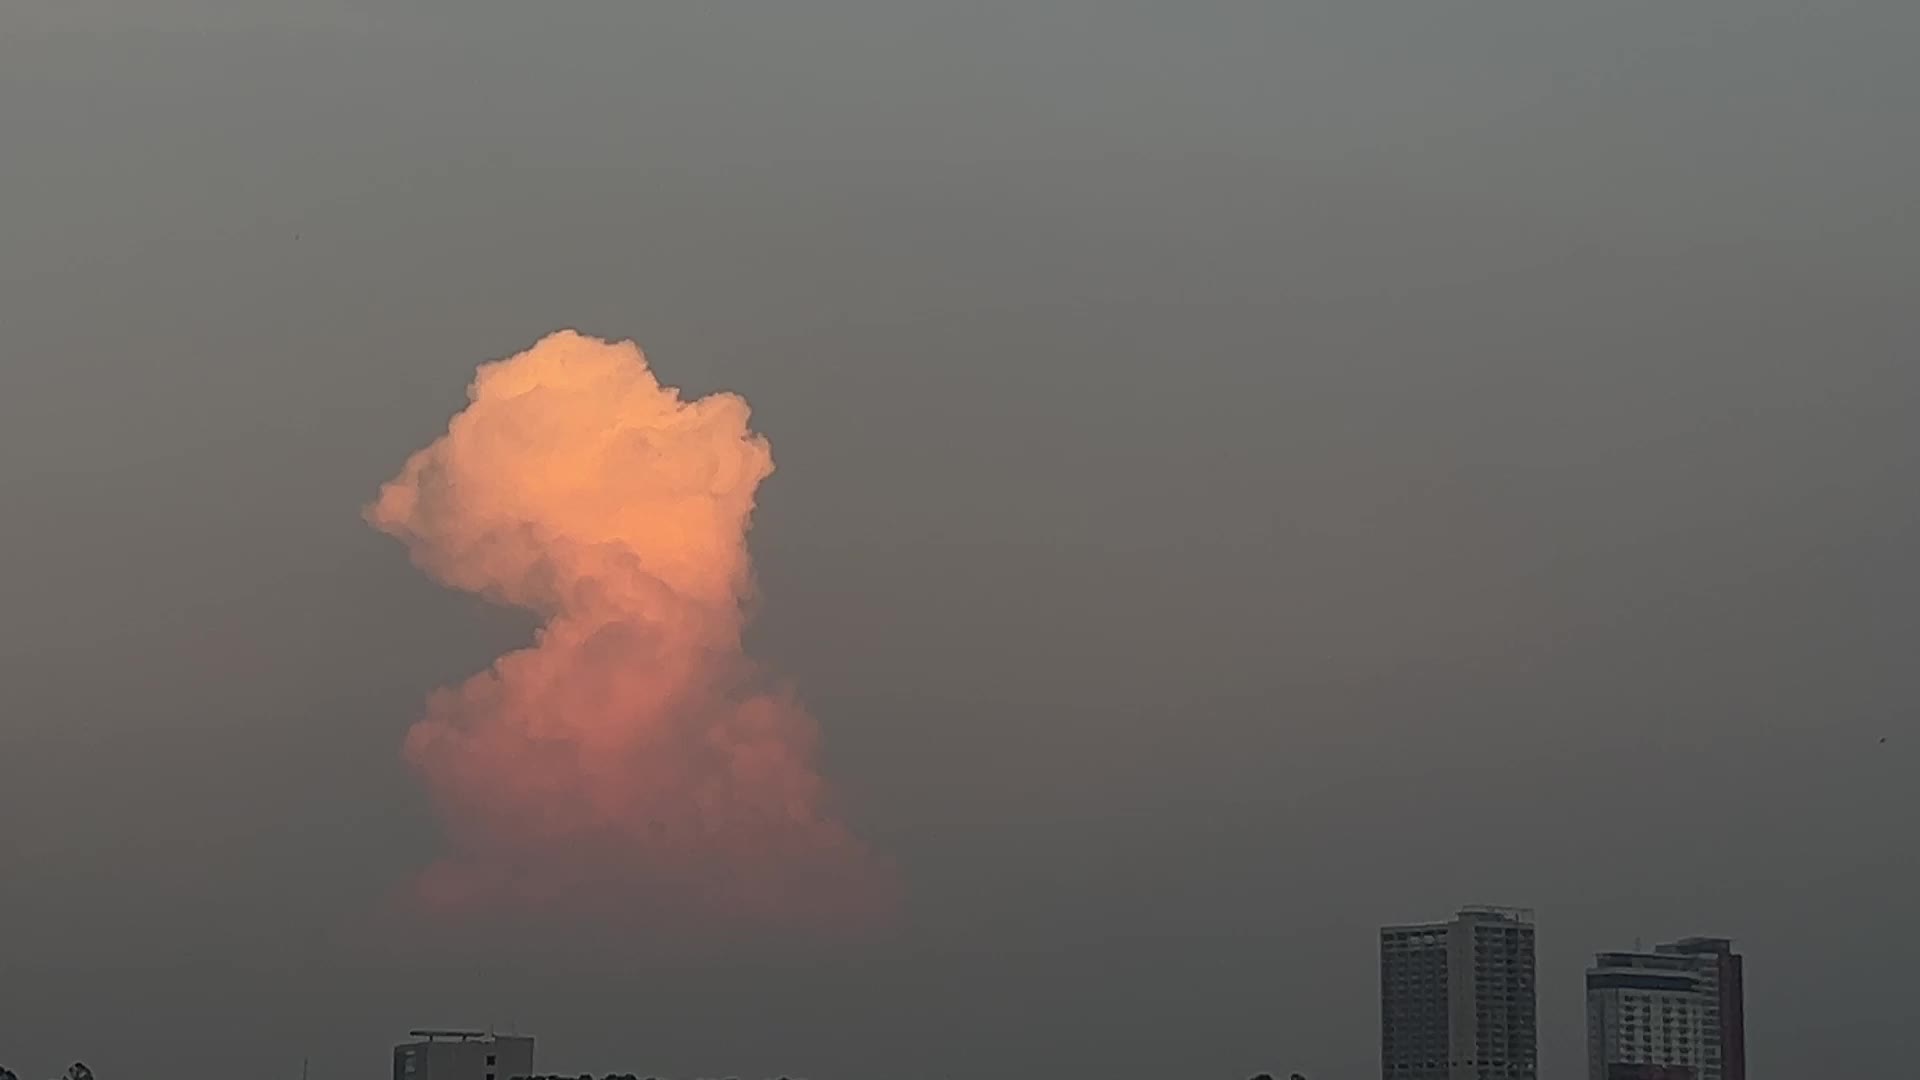 Cumulonimbus cloud in Indonesia